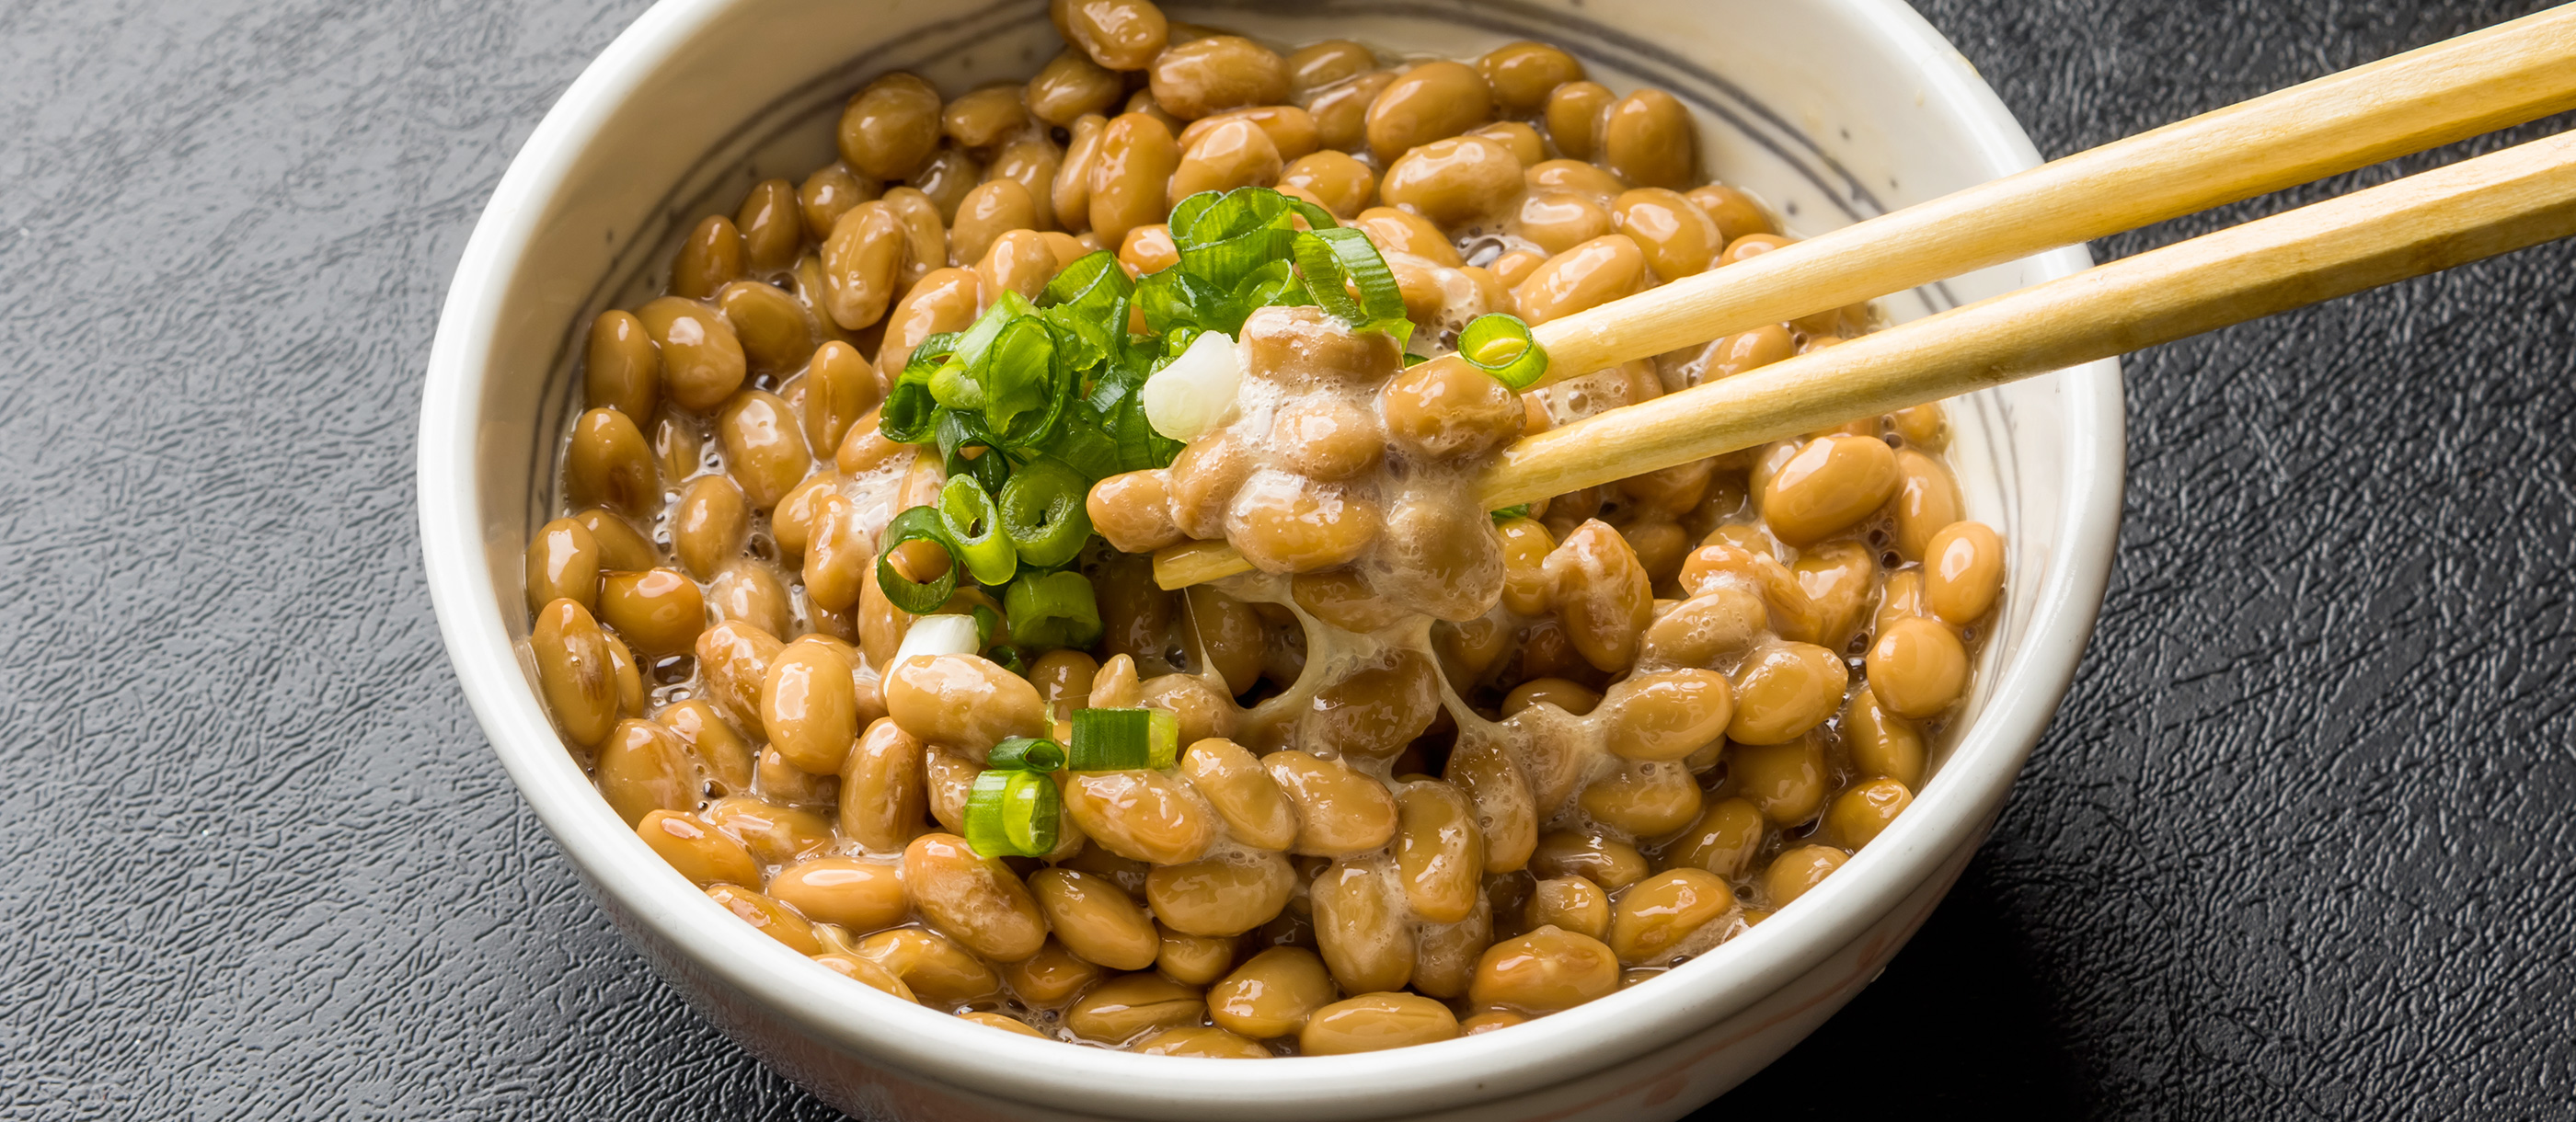 Beans natto Why Natto